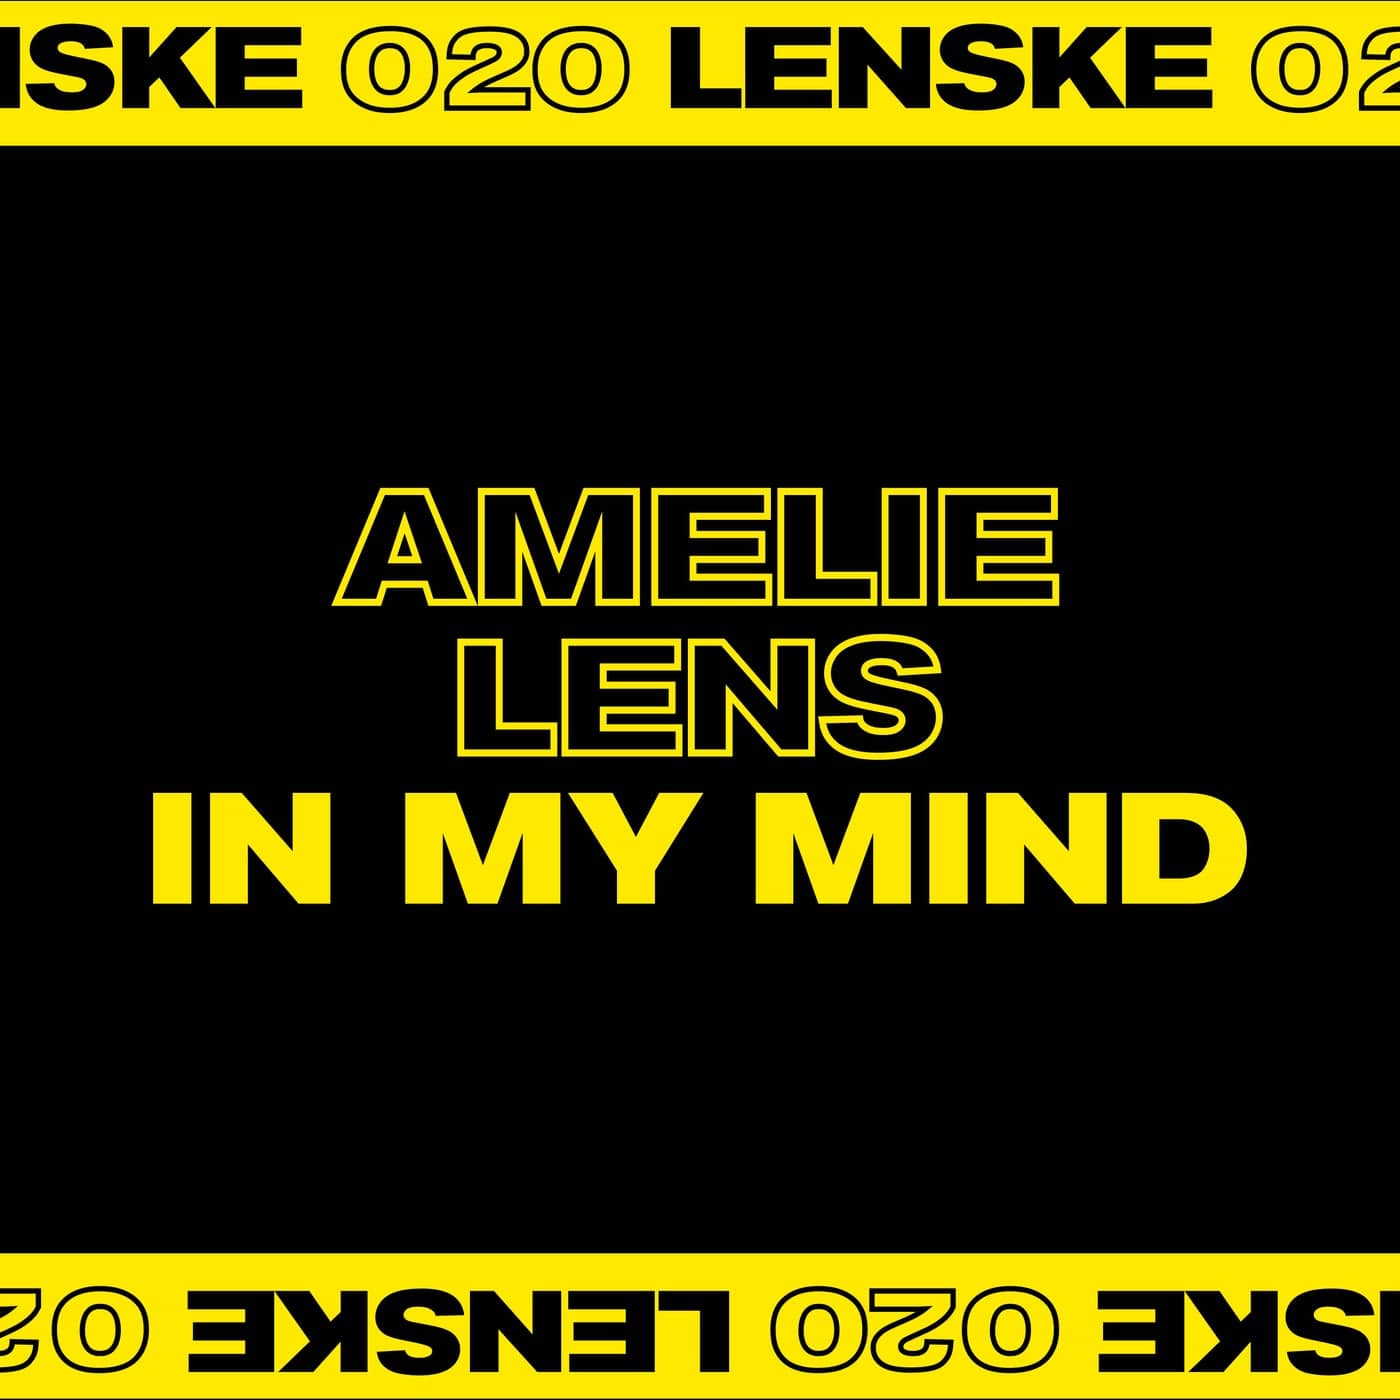 image cover: Amelie Lens - In My Mind EP / LENSKE020D